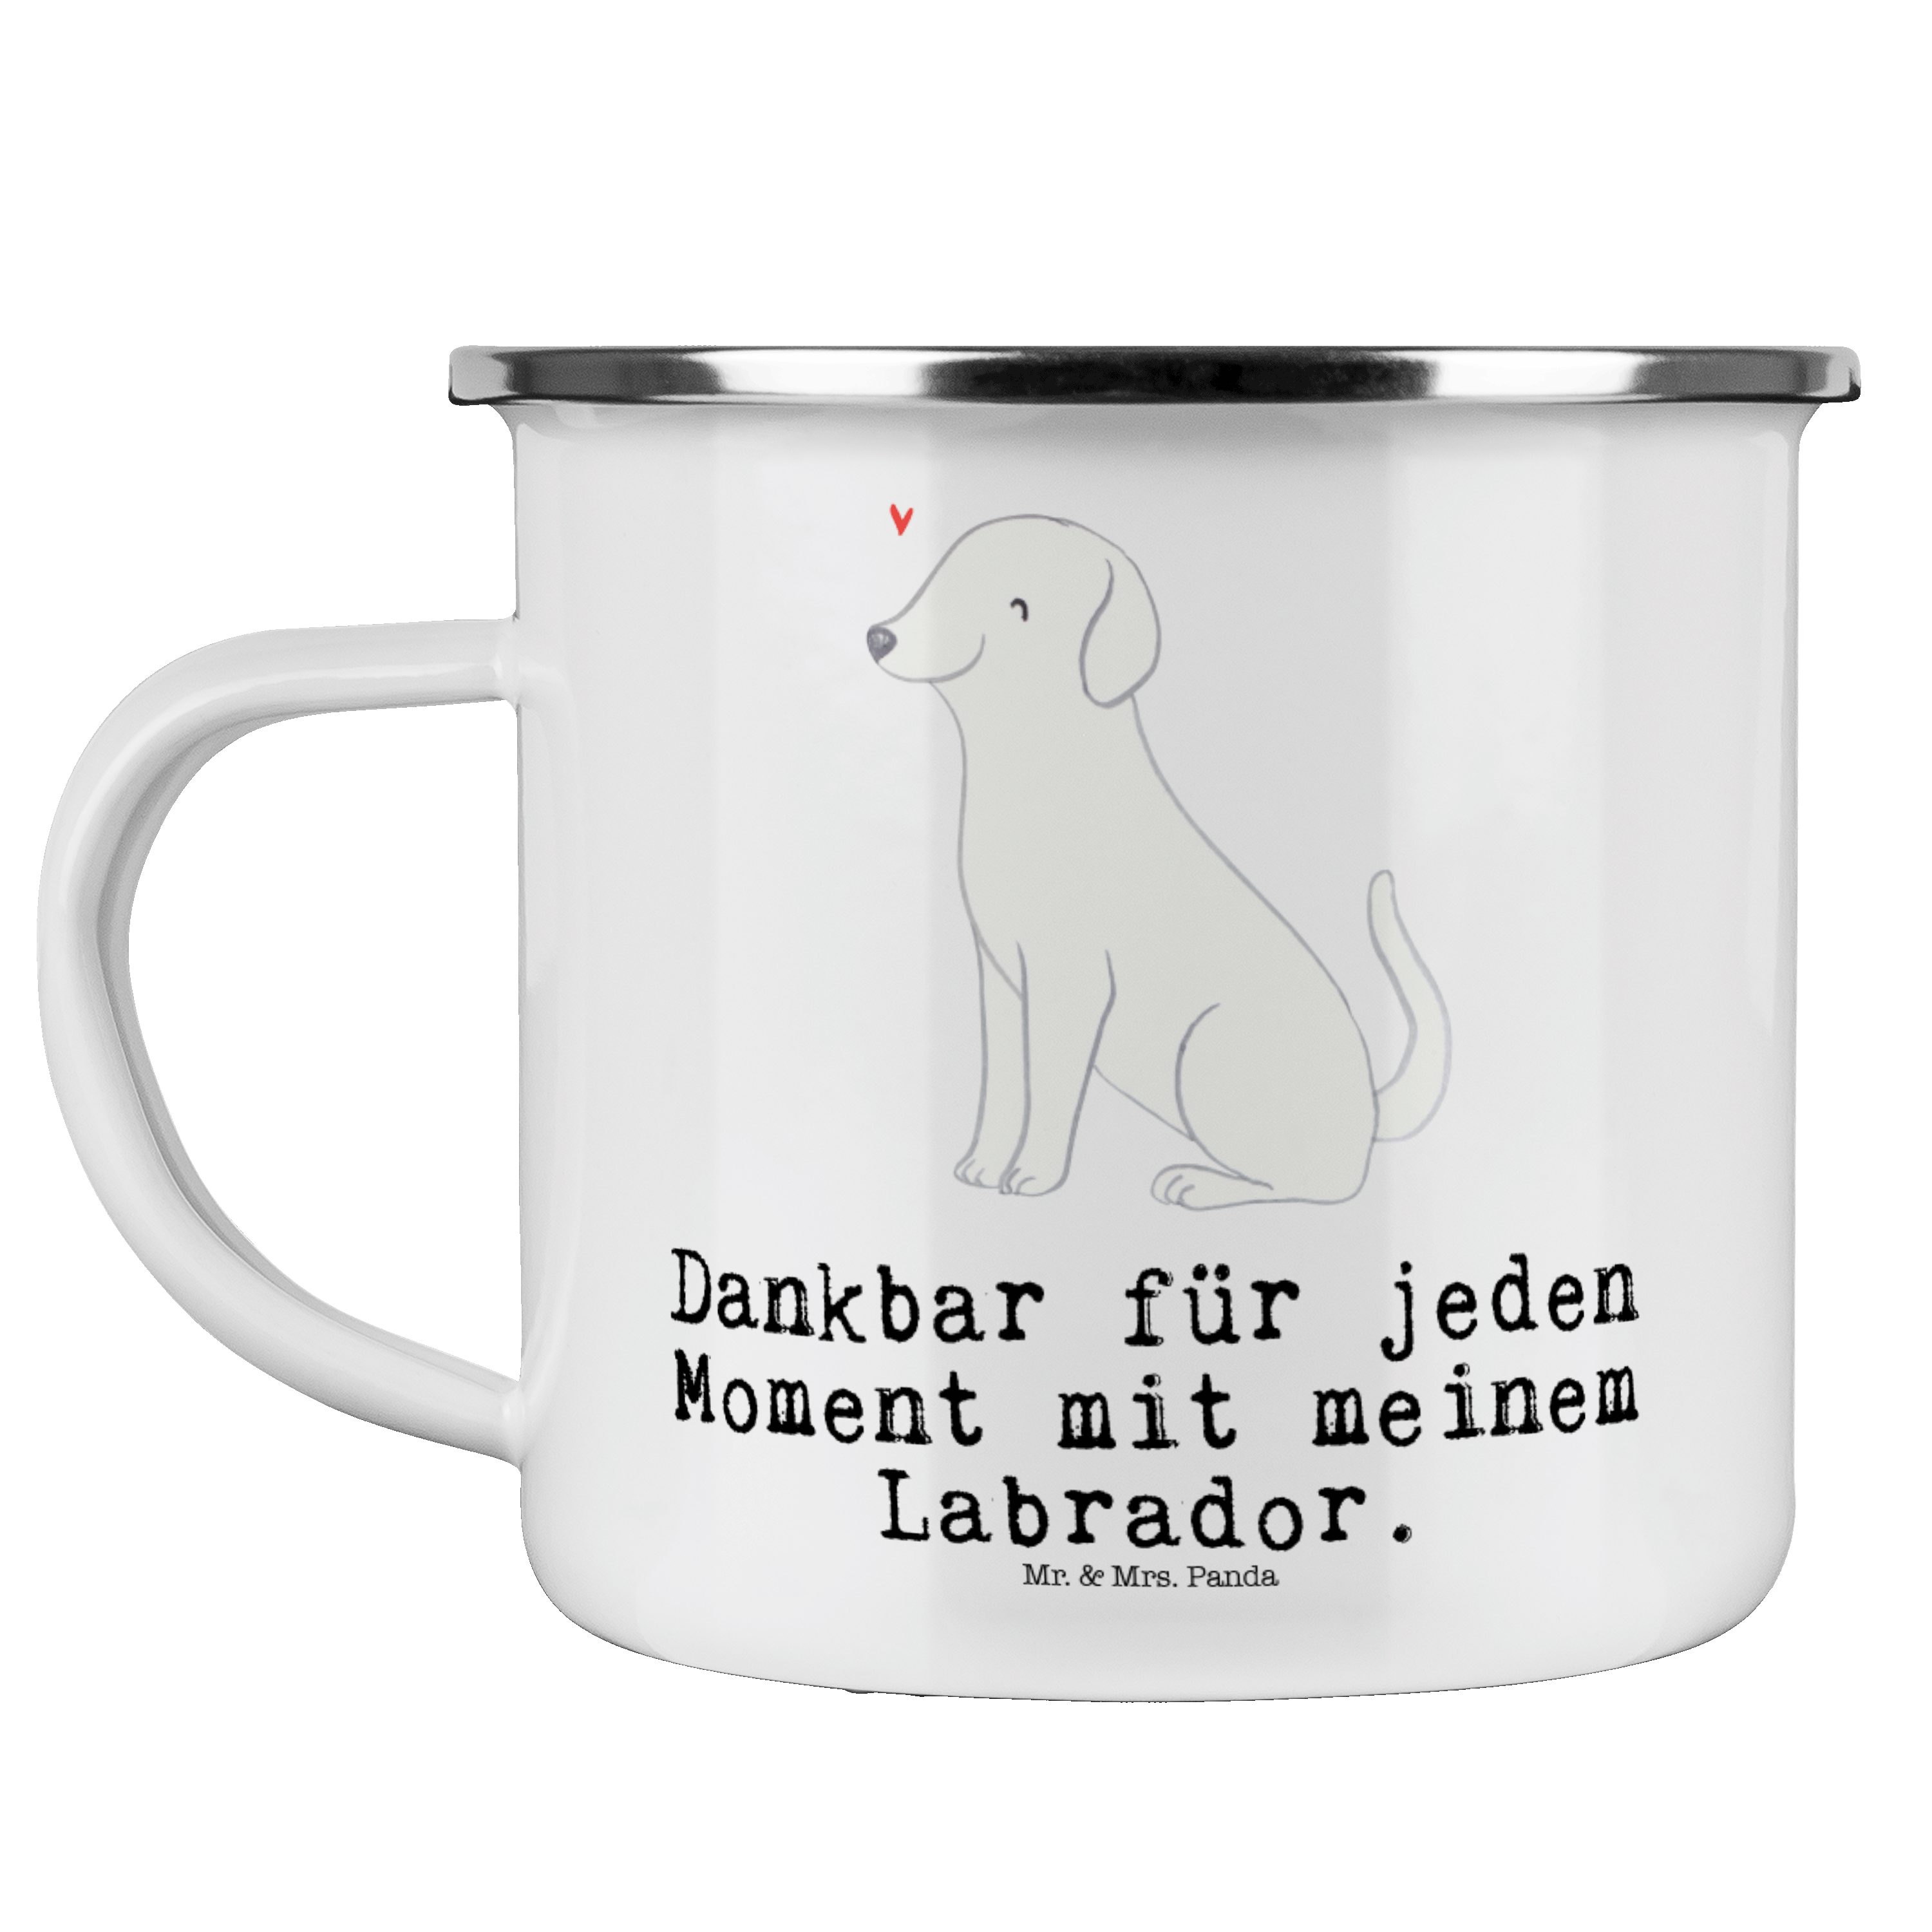 Mr. & Mrs. Panda Becher Labrador Moment - Weiß - Geschenk, Metalltasse für Camping, Schenken, Emaille